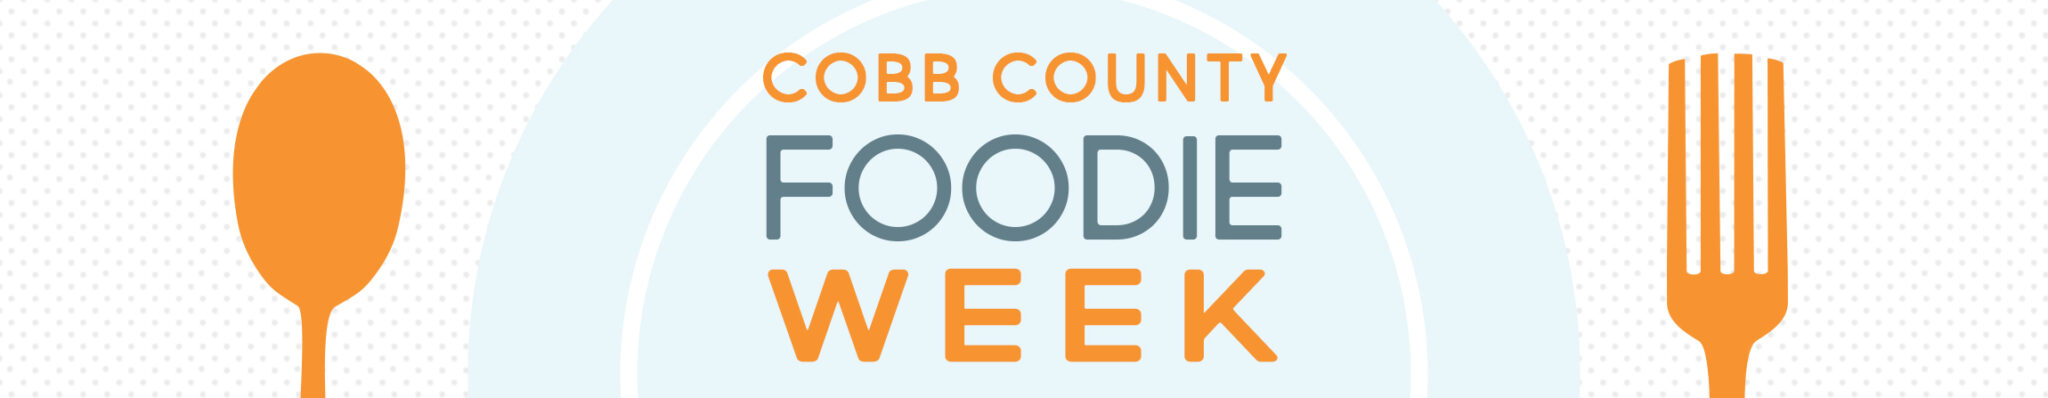 Cobb County Foodie Week